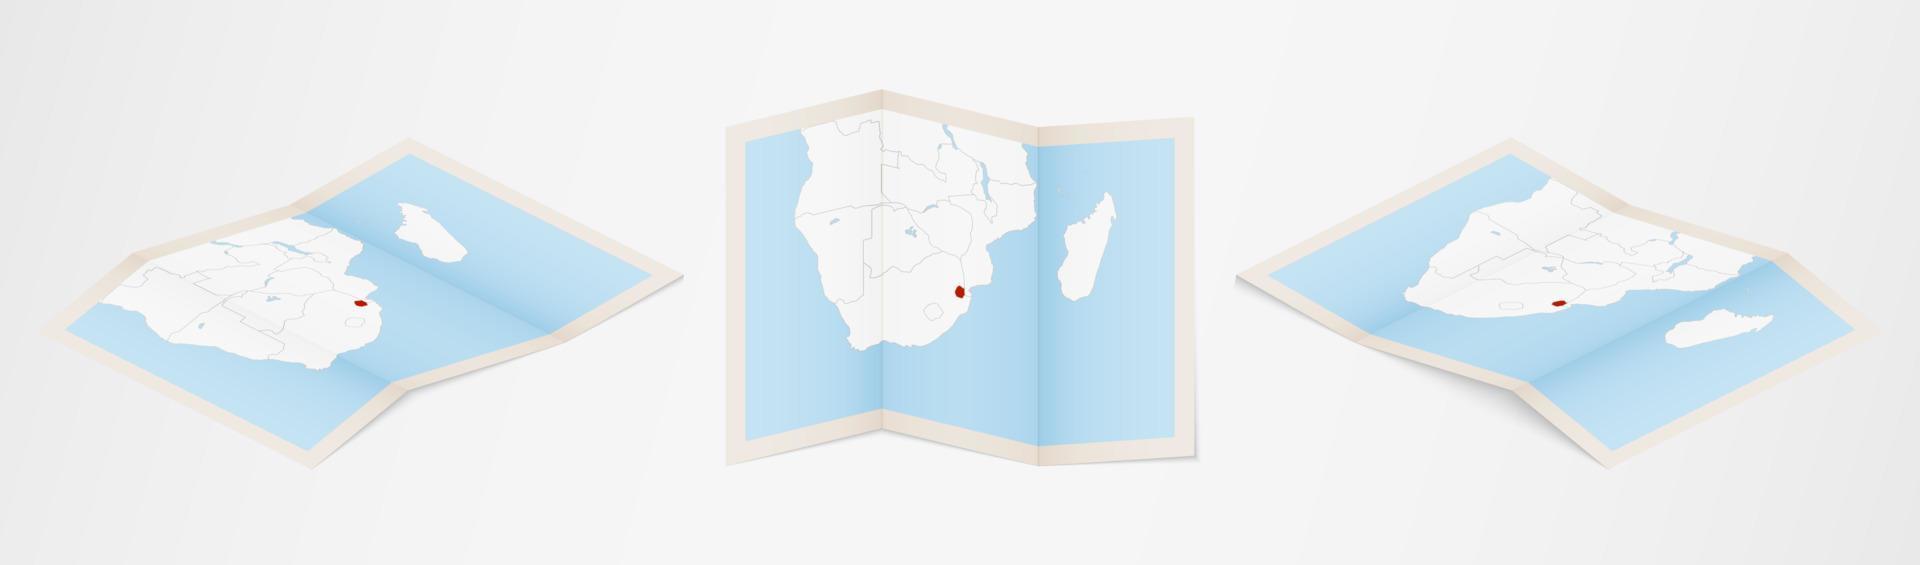 mapa plegado de swazilandia en tres versiones diferentes. vector